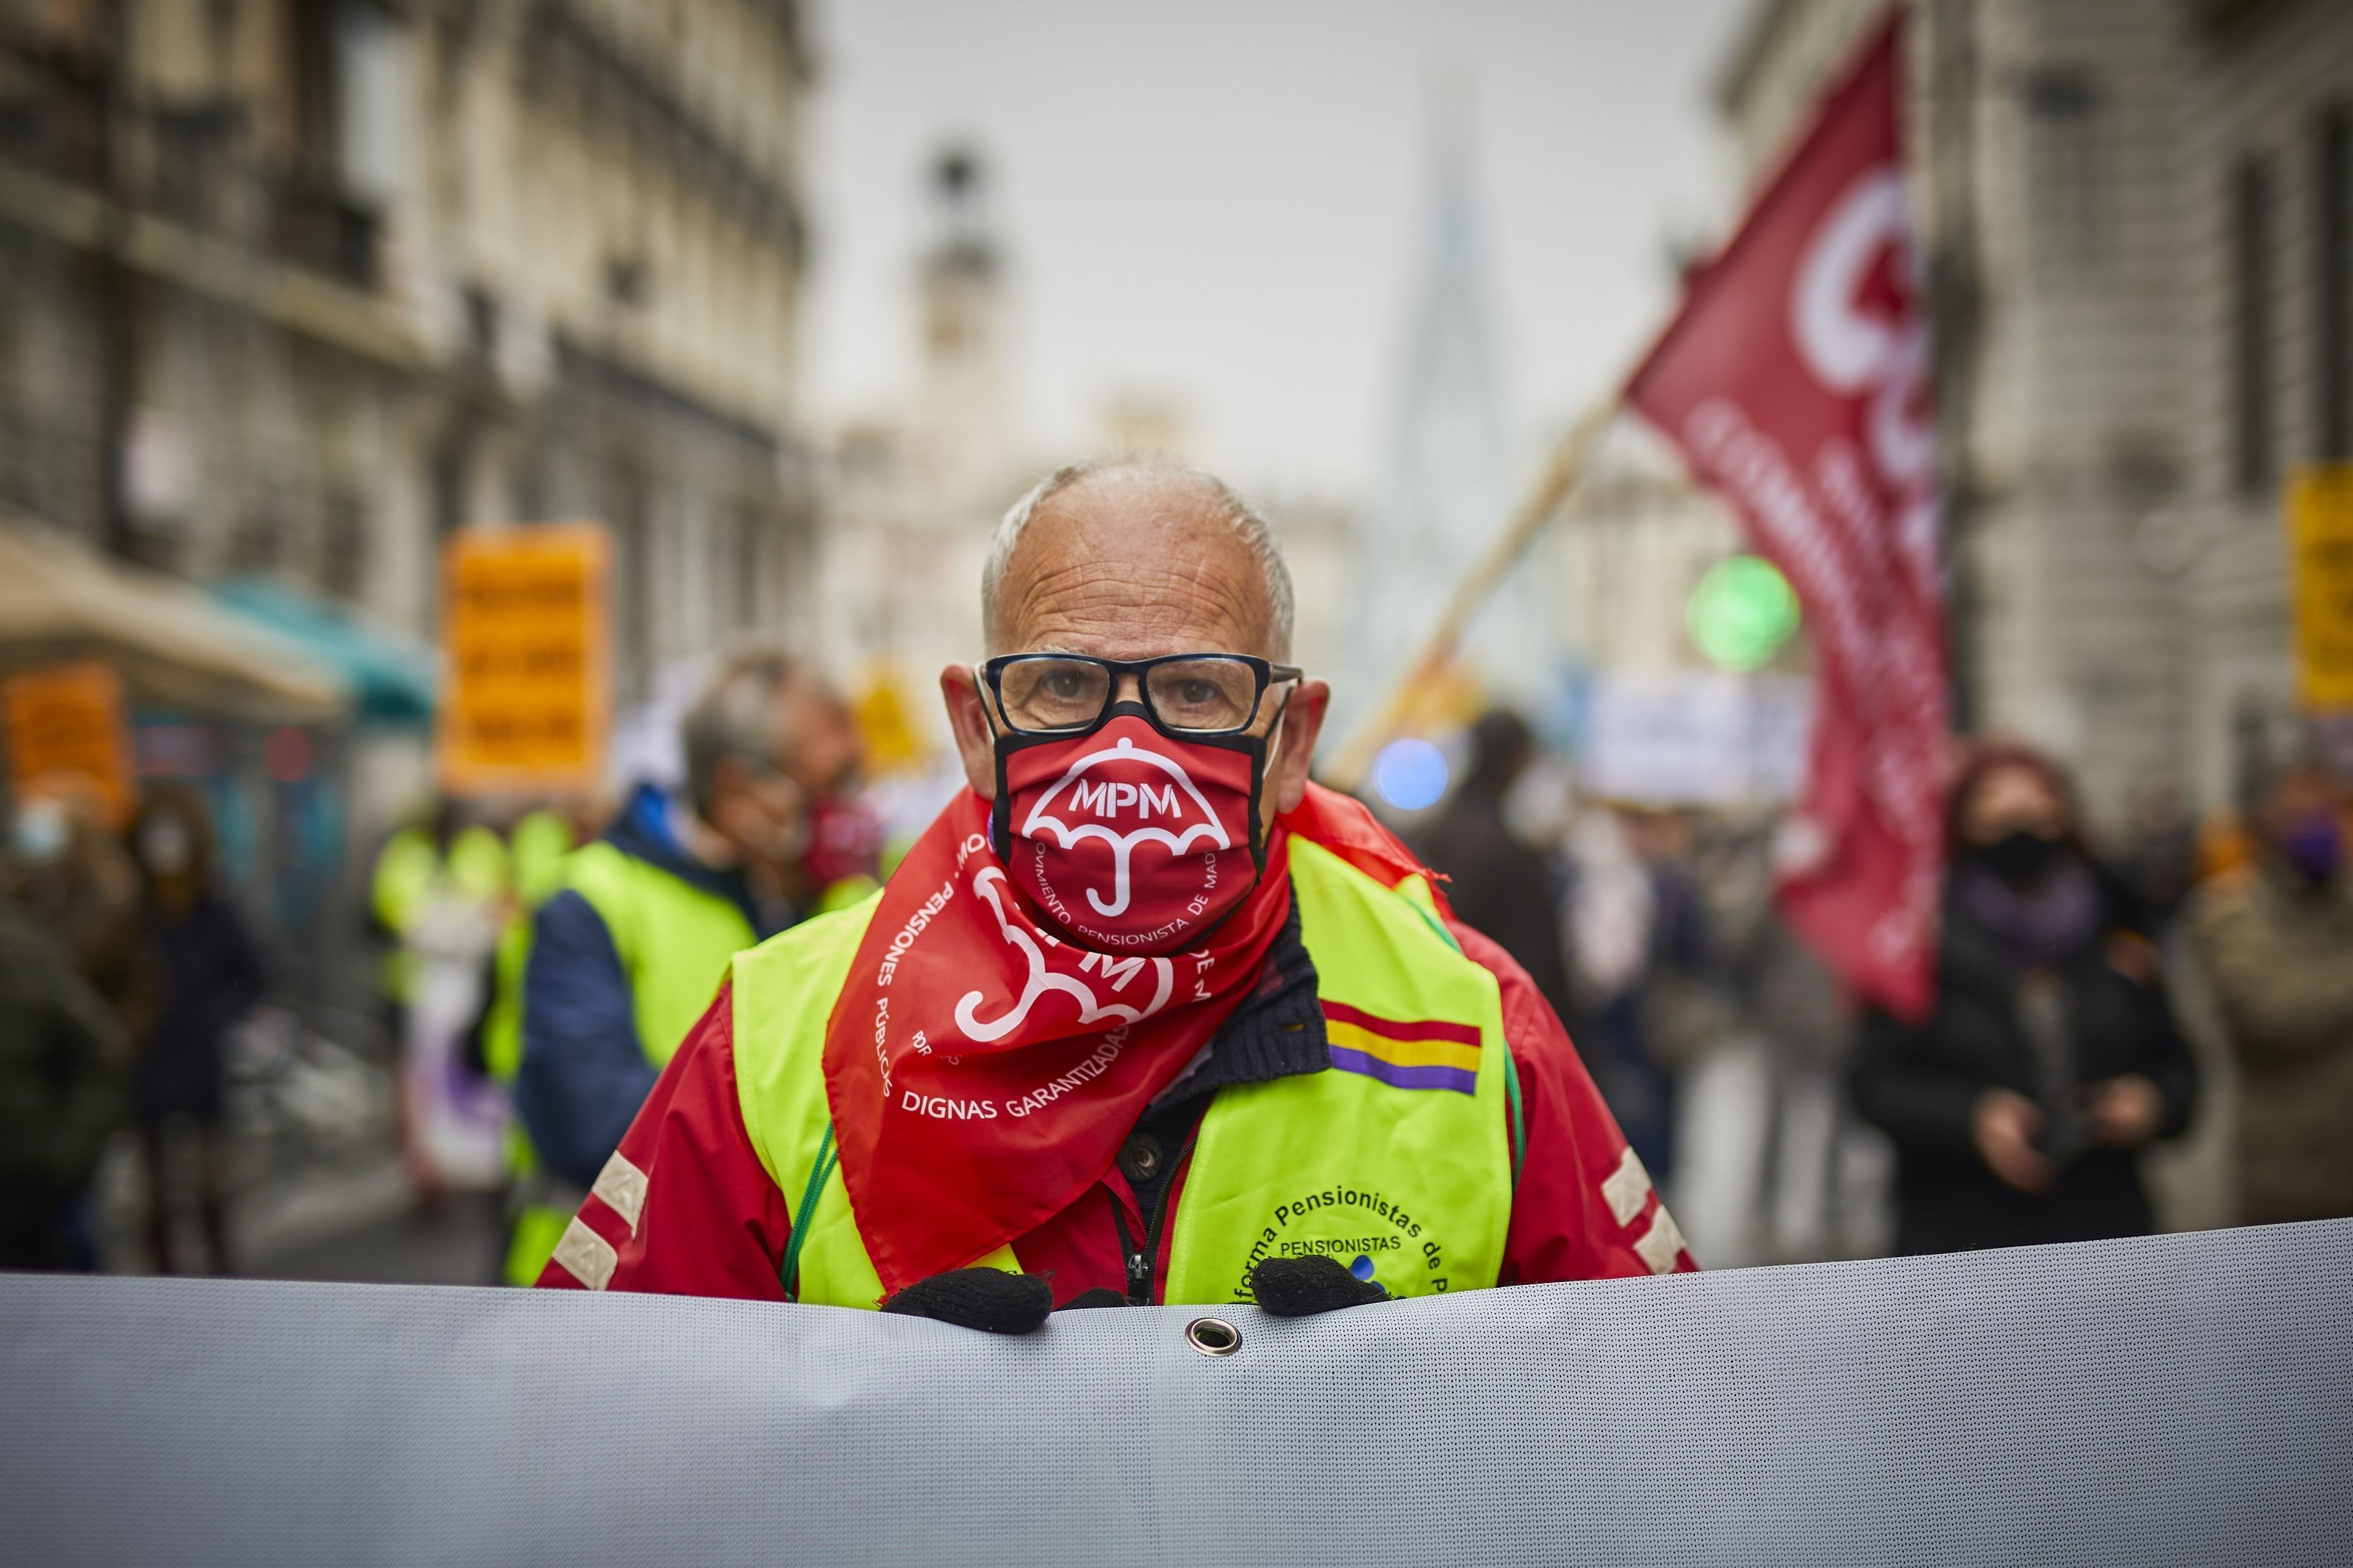 Duro otoño para pensionistas: restricciones energéticas, protestas y la amenaza del covid y la gripe